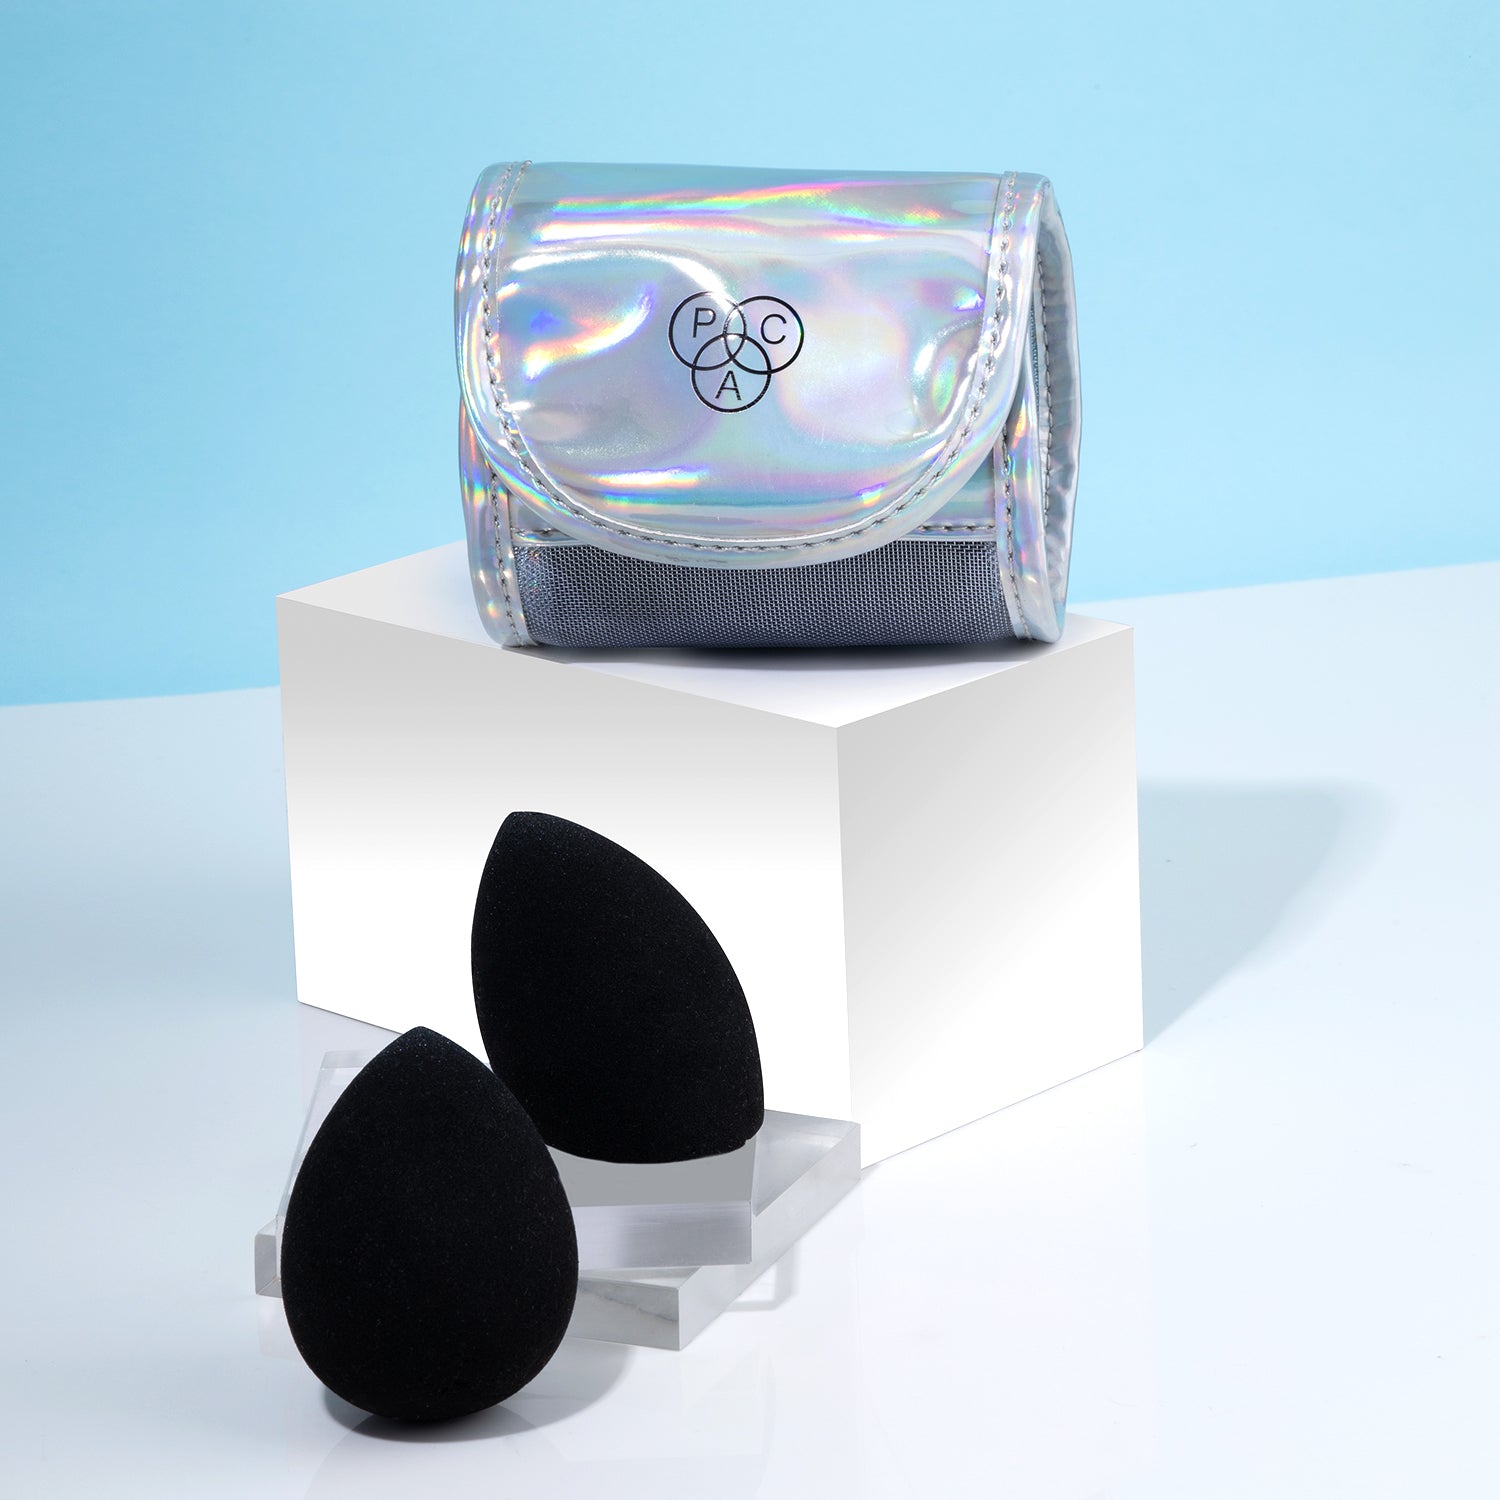 PAC Cosmetics 3D Sponge Set Limited Edition Holographic (2 Pcs)